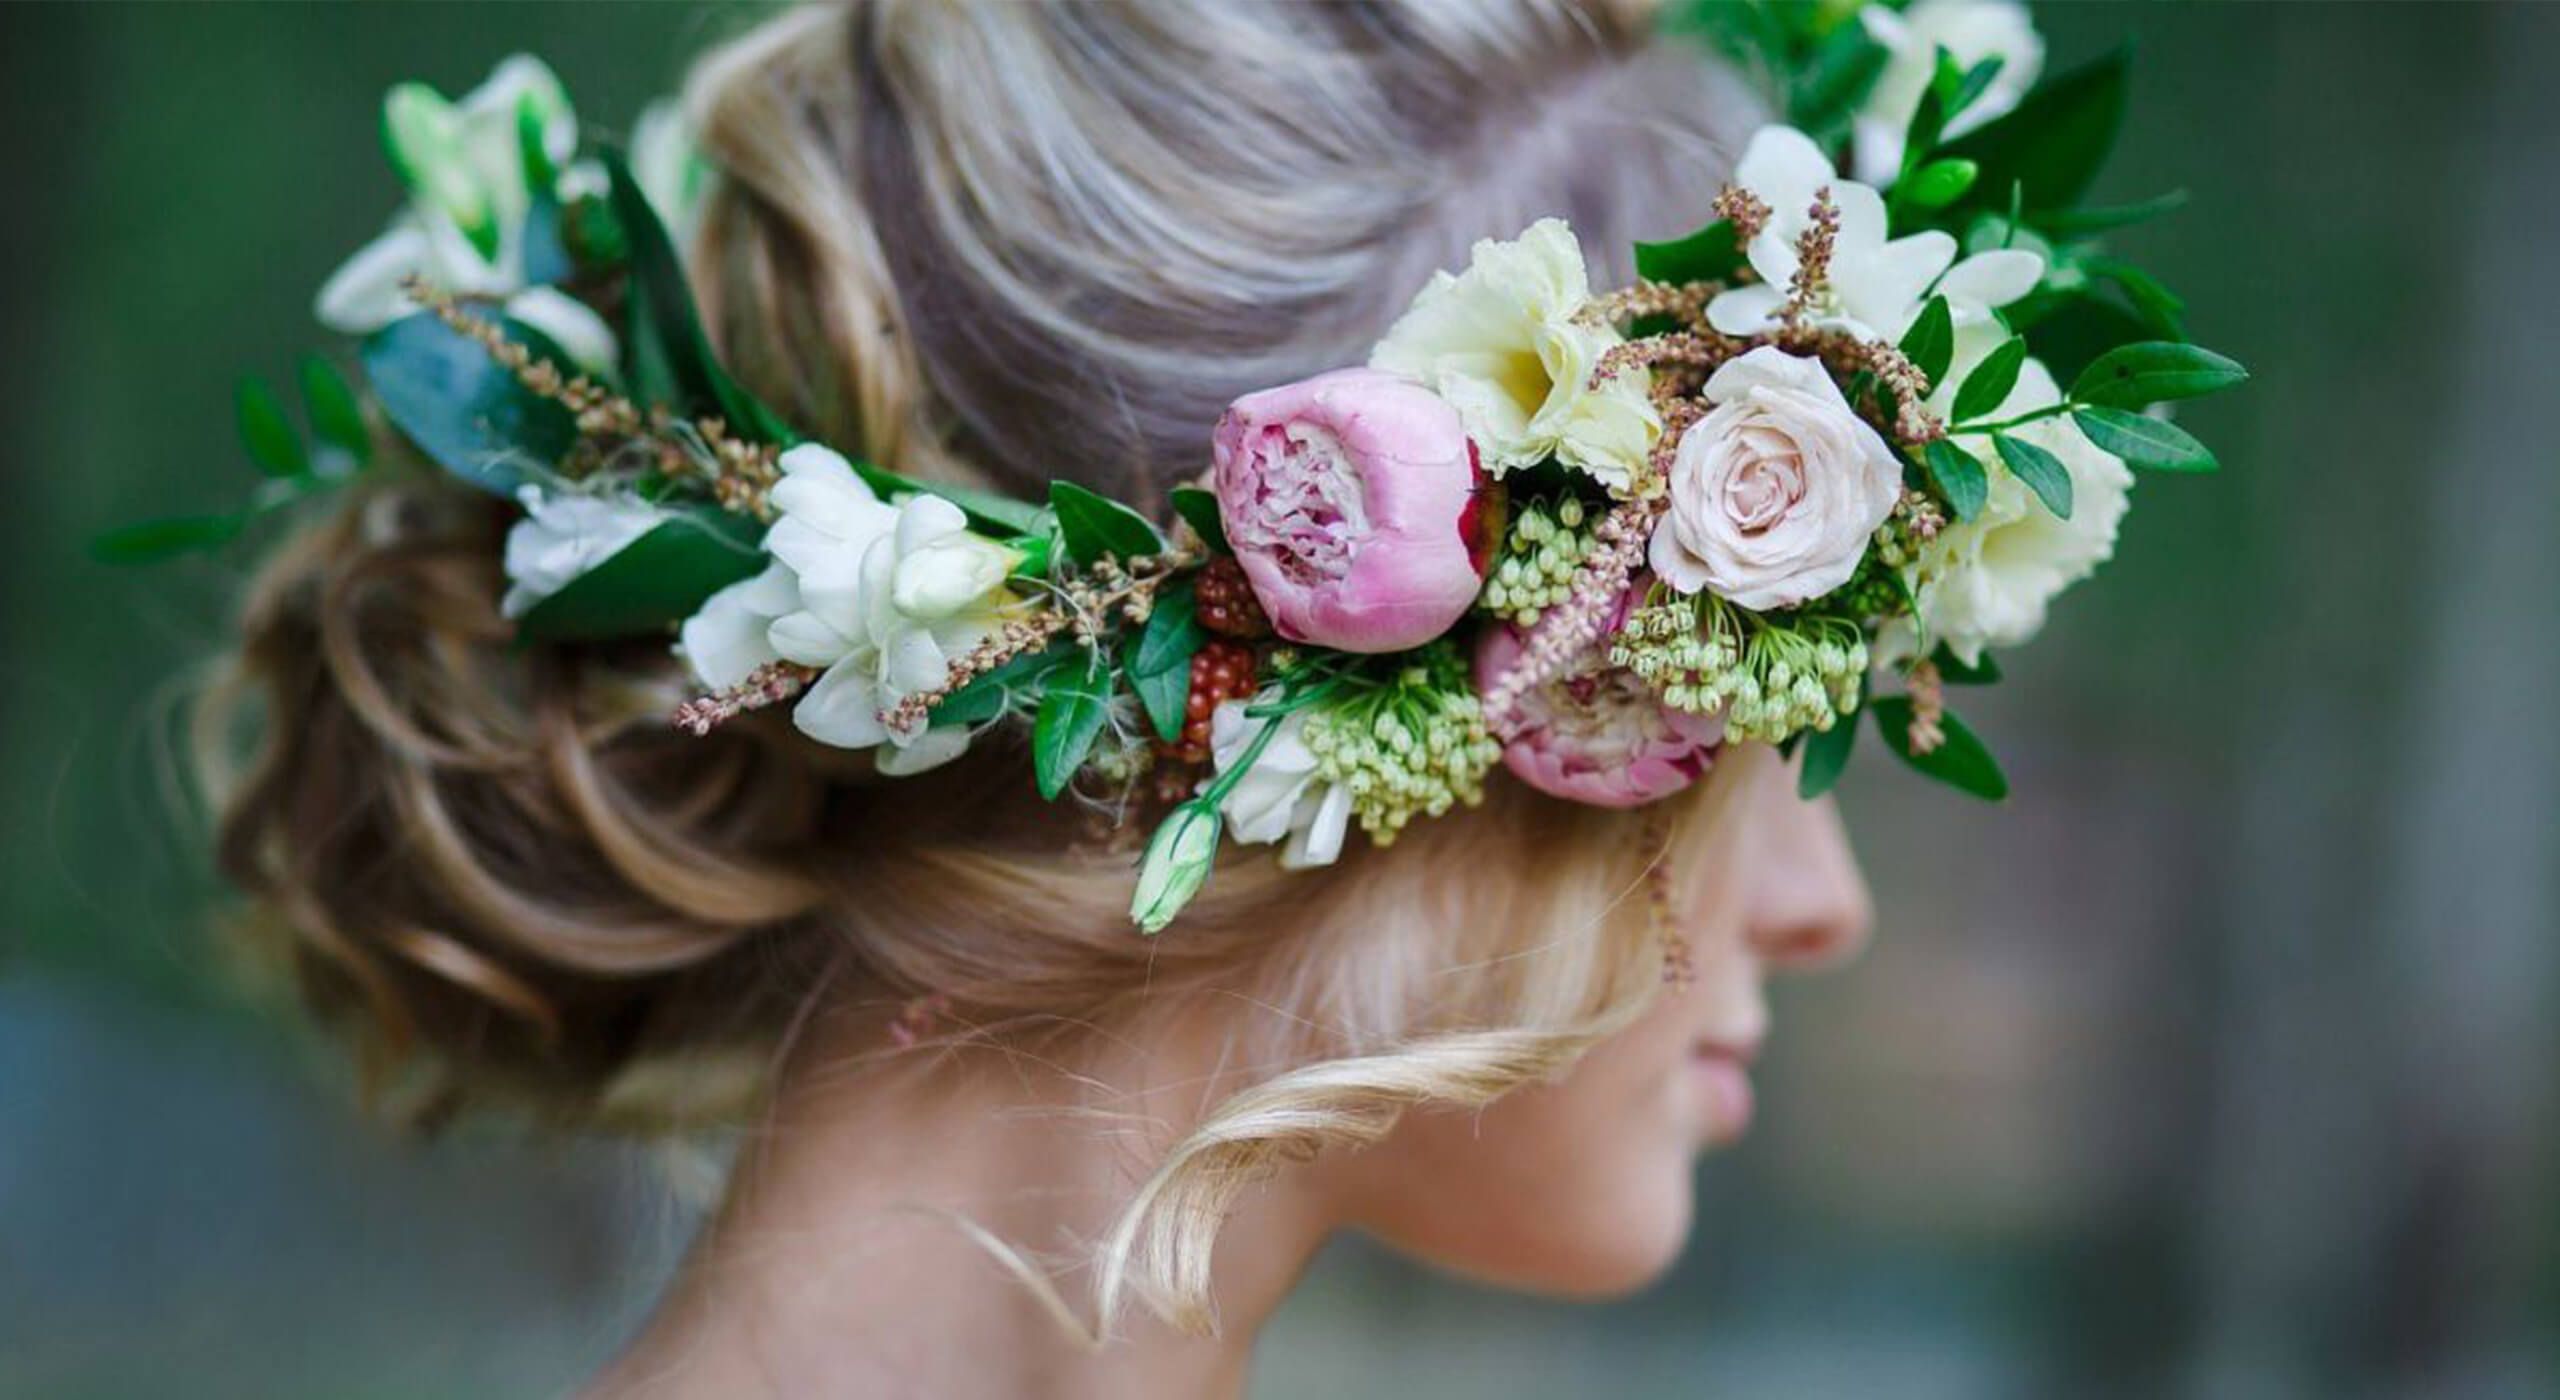 Свадебные венки на голову из искусственных цветов ? в [2022] & свадебный образ с венком из живых цветов